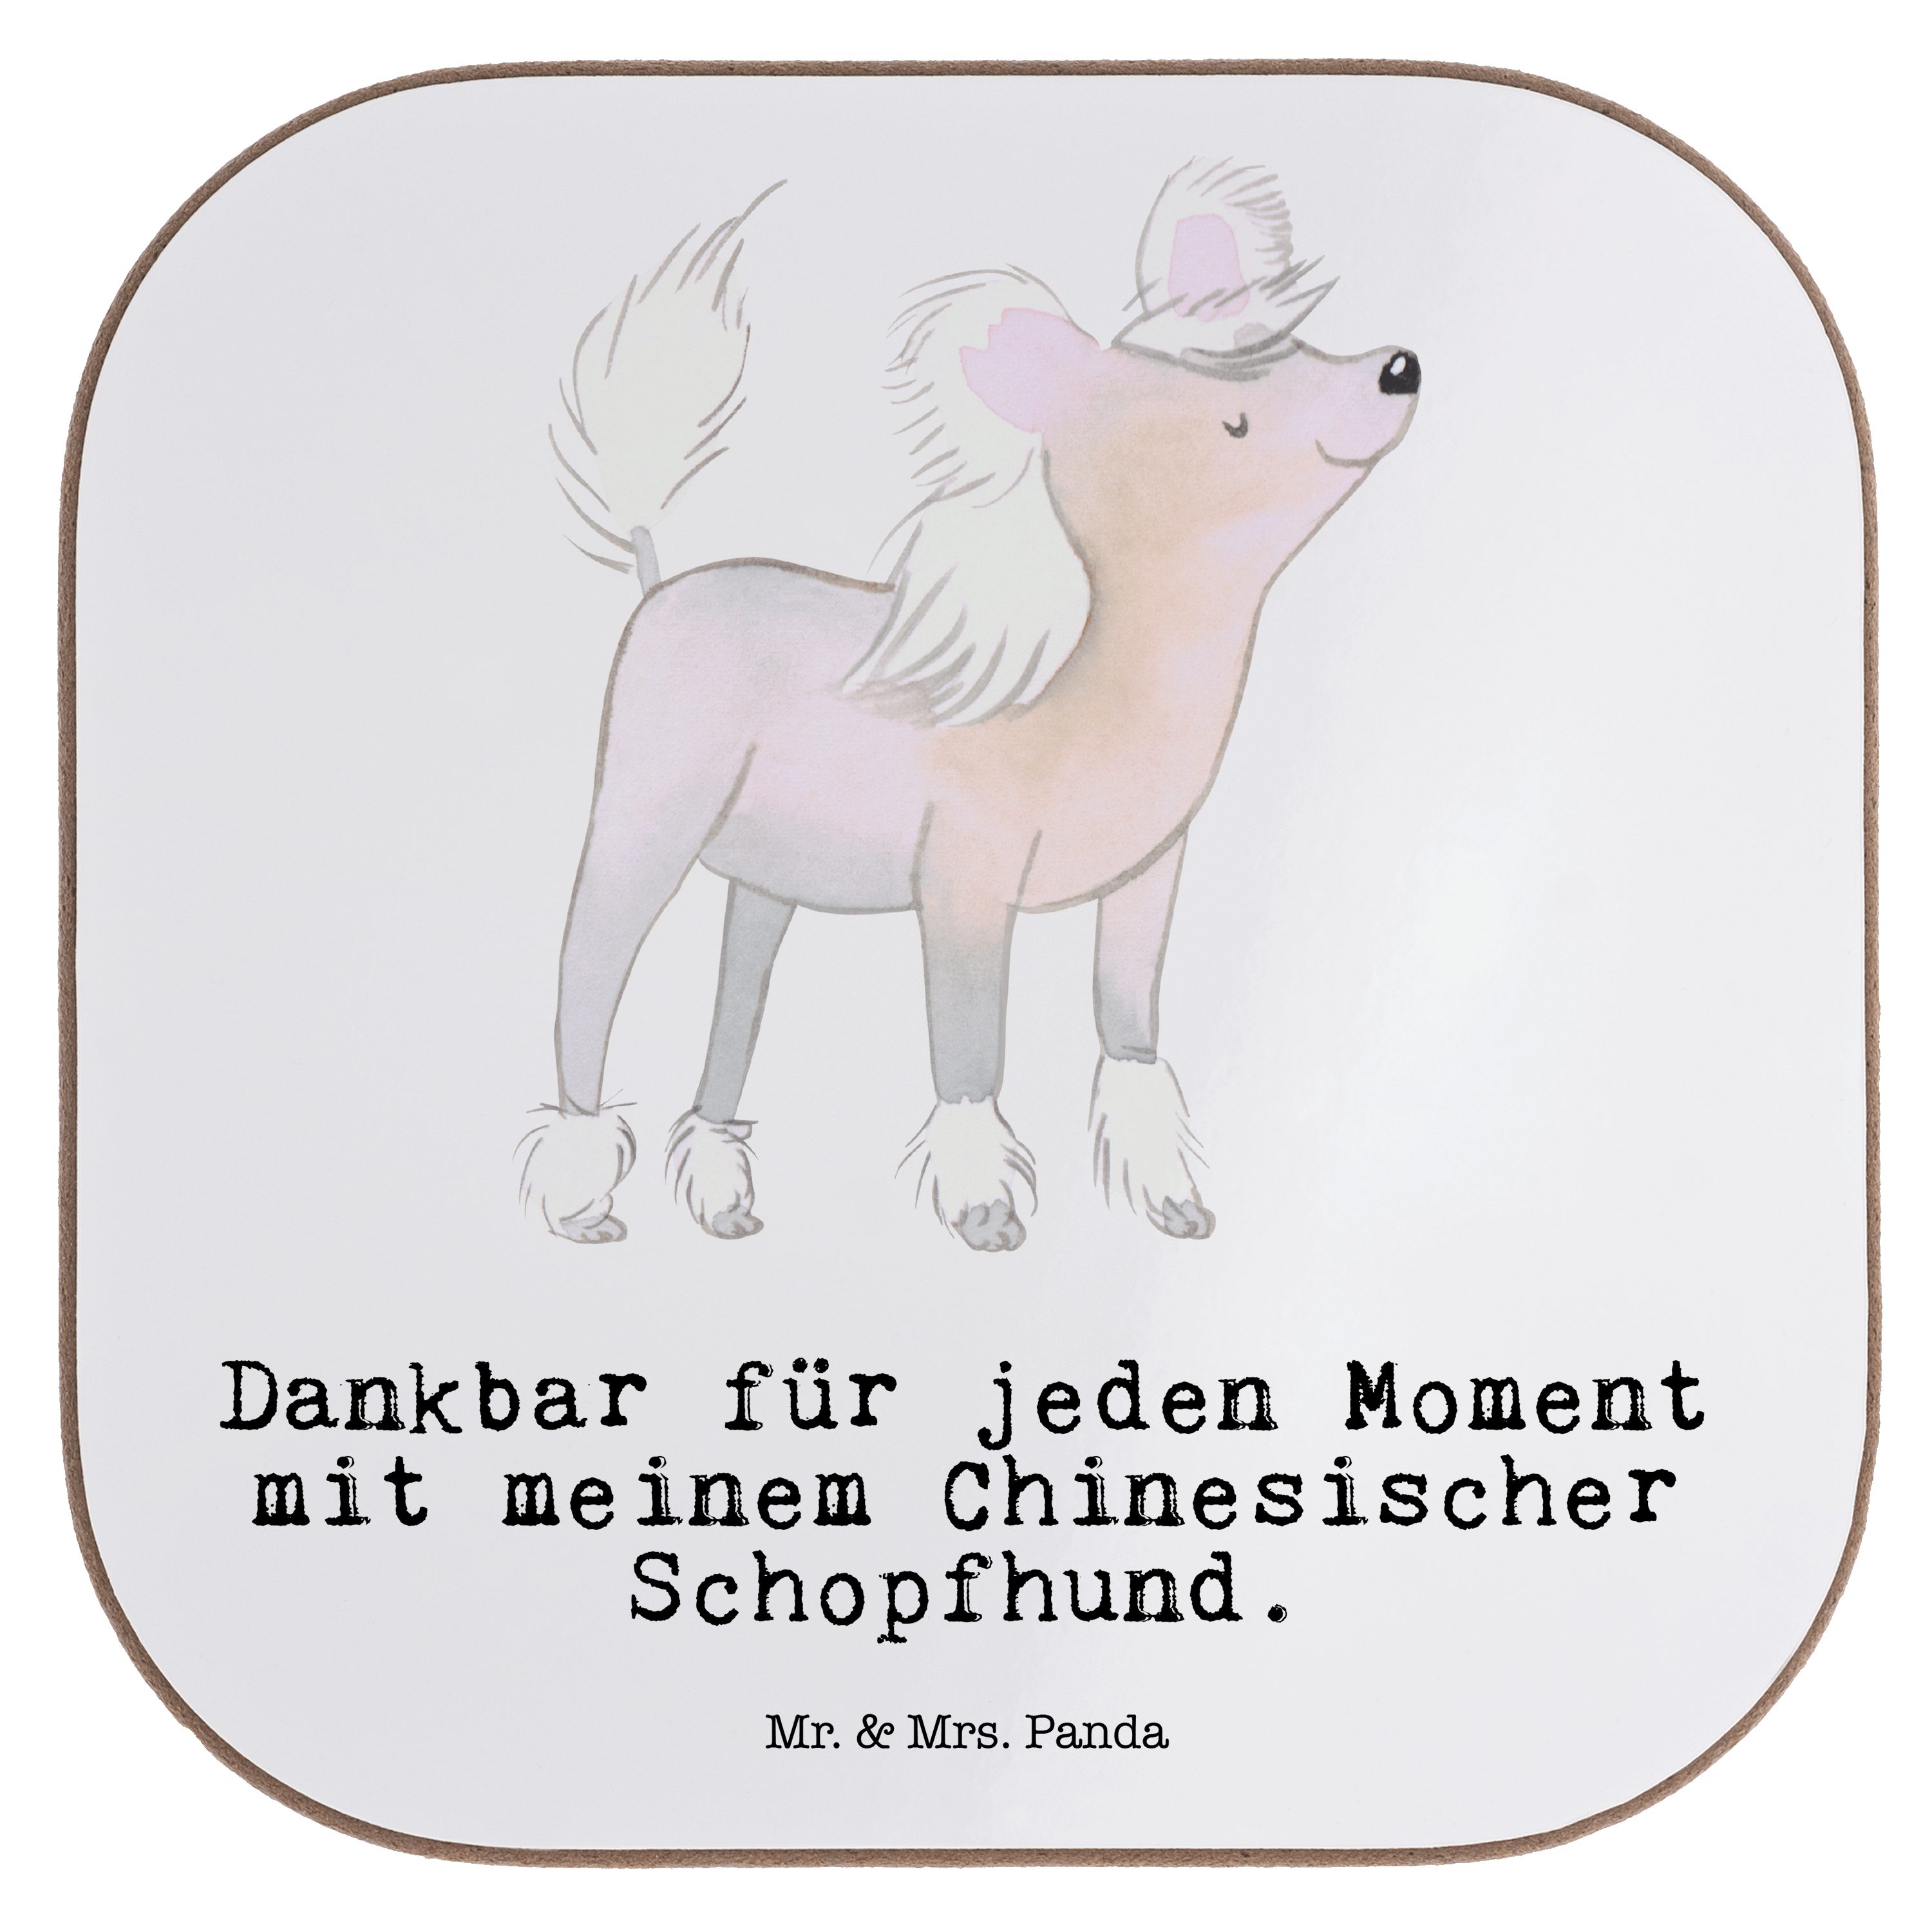 Mr. & Mrs. Panda Getränkeuntersetzer Chinesischer Schopfhund Moment - Weiß - Geschenk, Getränkeuntersetzer, 1-tlg.